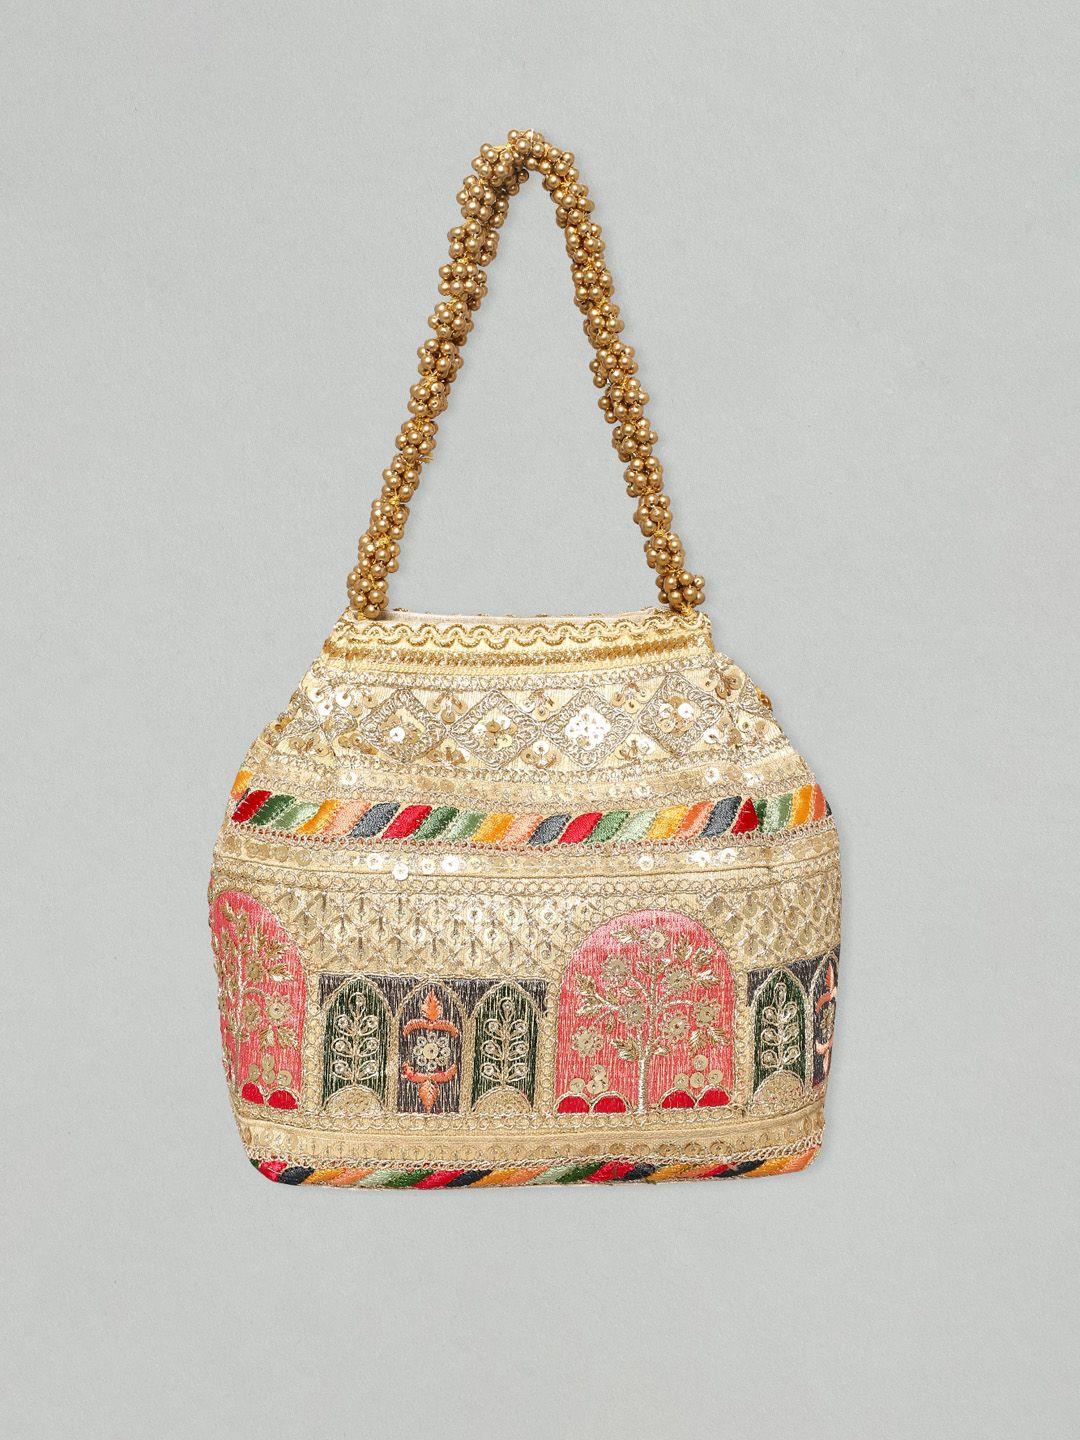 rubans embroiderd oversized structured shoulder bag